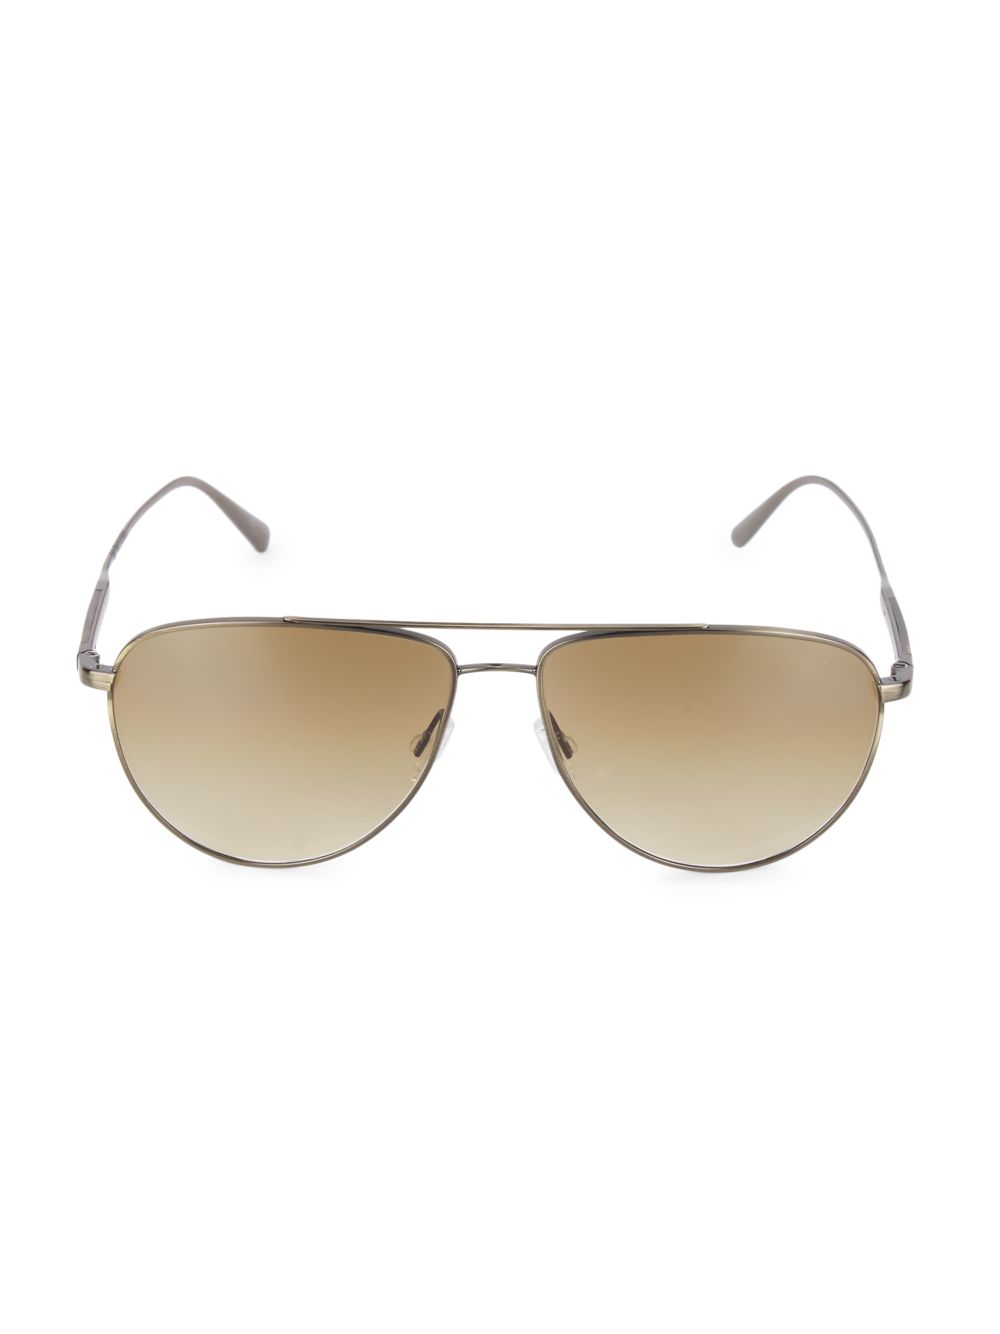 Солнцезащитные очки-авиаторы Disoriano 58MM Brunello Cucinelli & Oliver Peoples, золотой